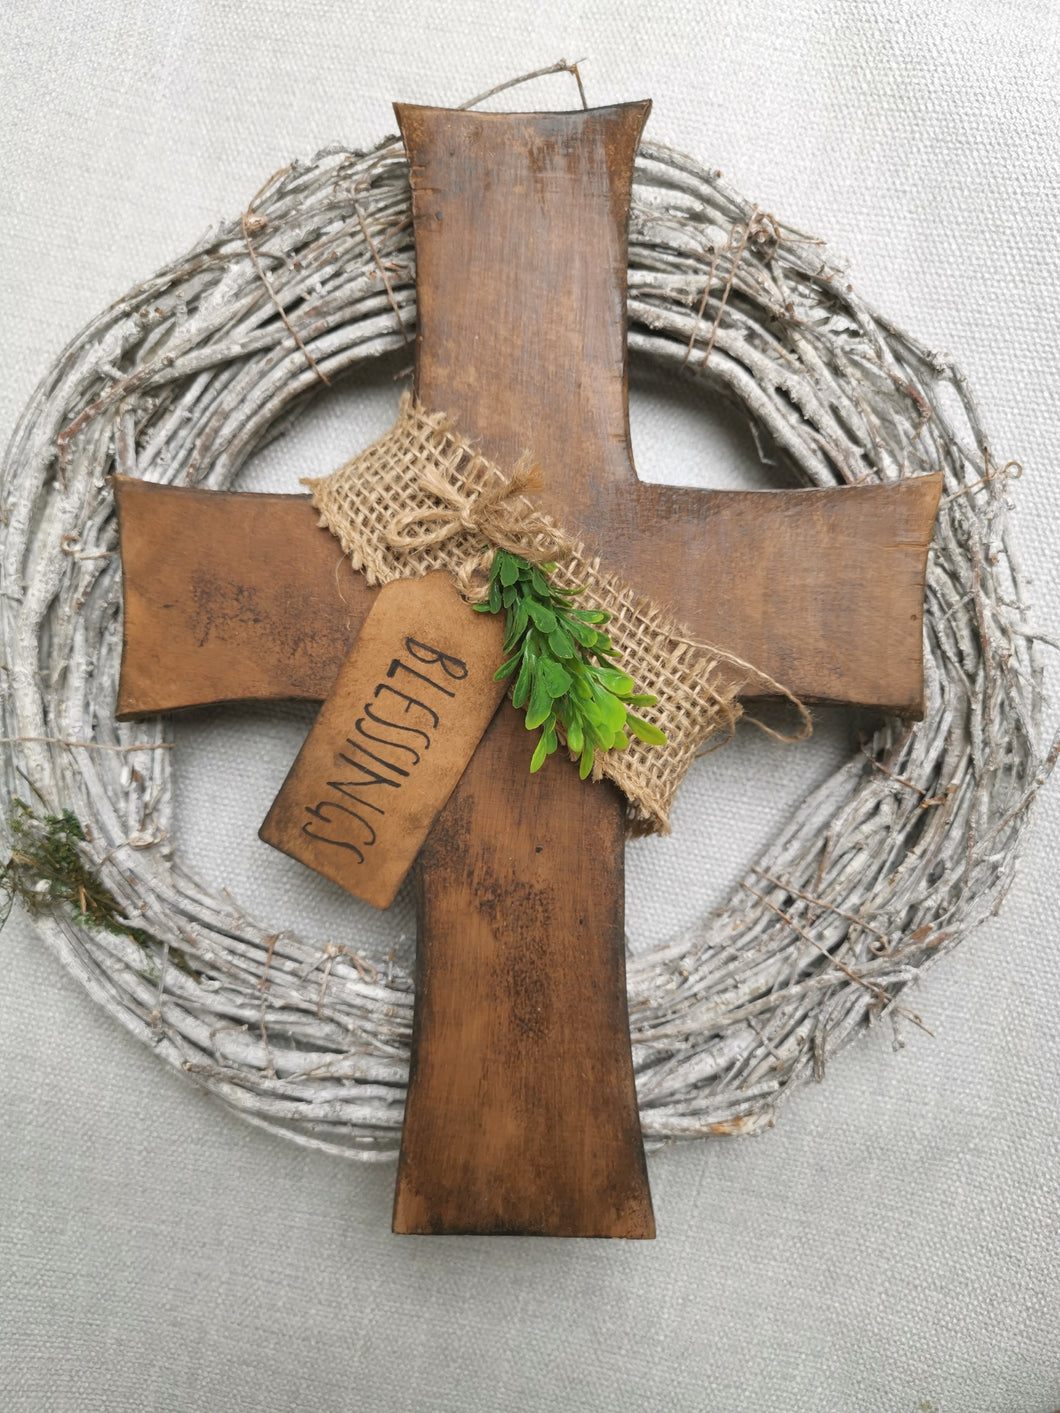 Primitive decorative Cross